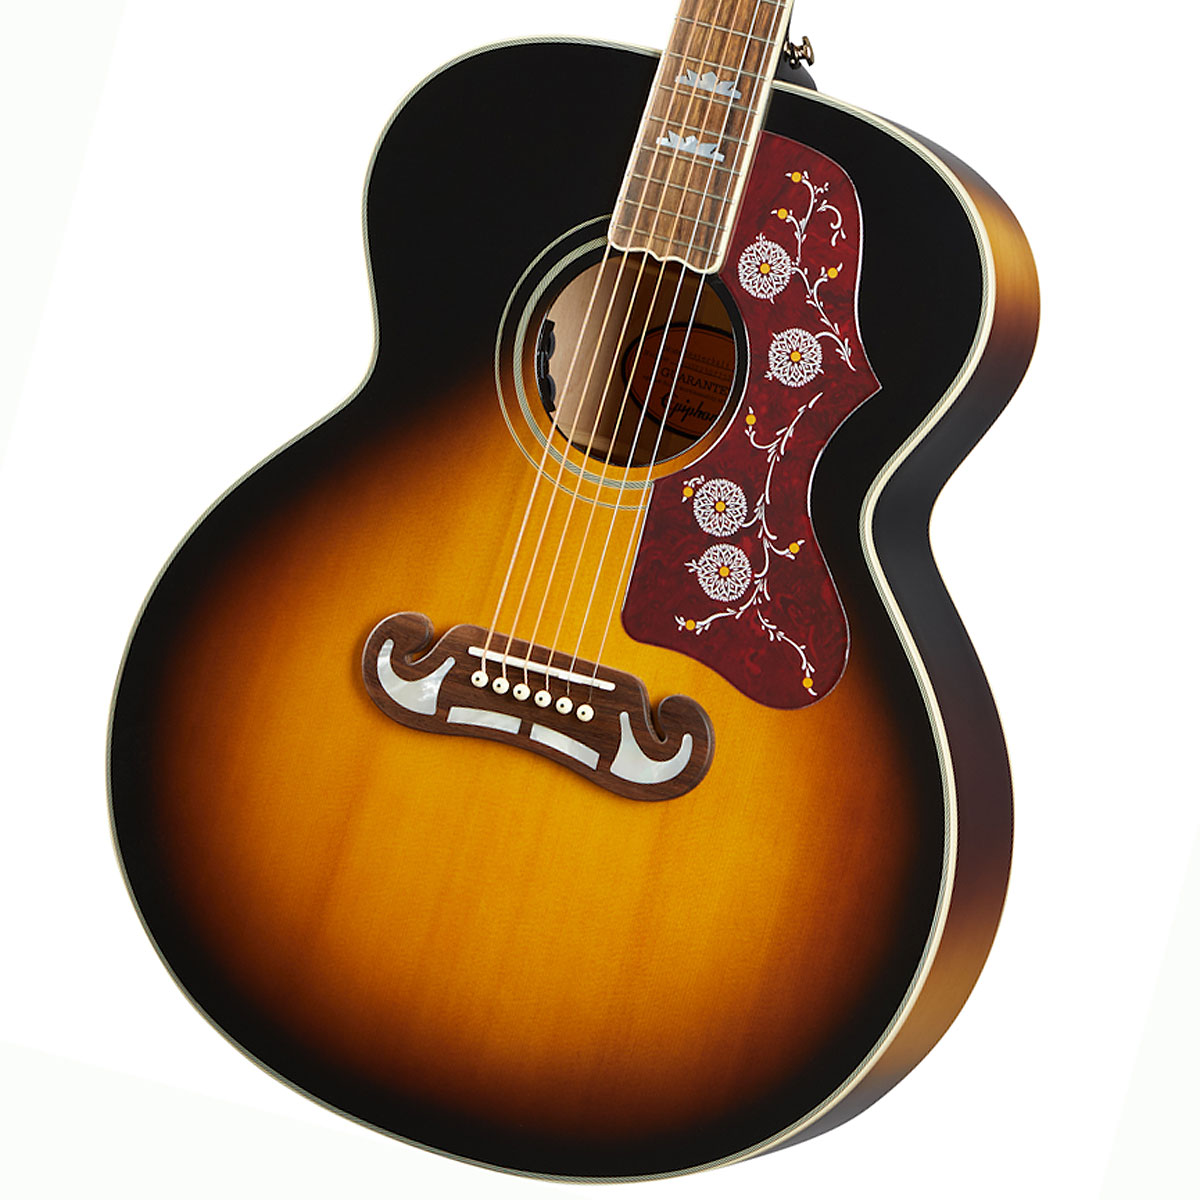 無料サンプルOK 在庫有り Epiphone Masterbilt J-200 Aged Vintage Sunburst アコギ エピフォン Gloss 完全送料無料 J200 アコースティックギター